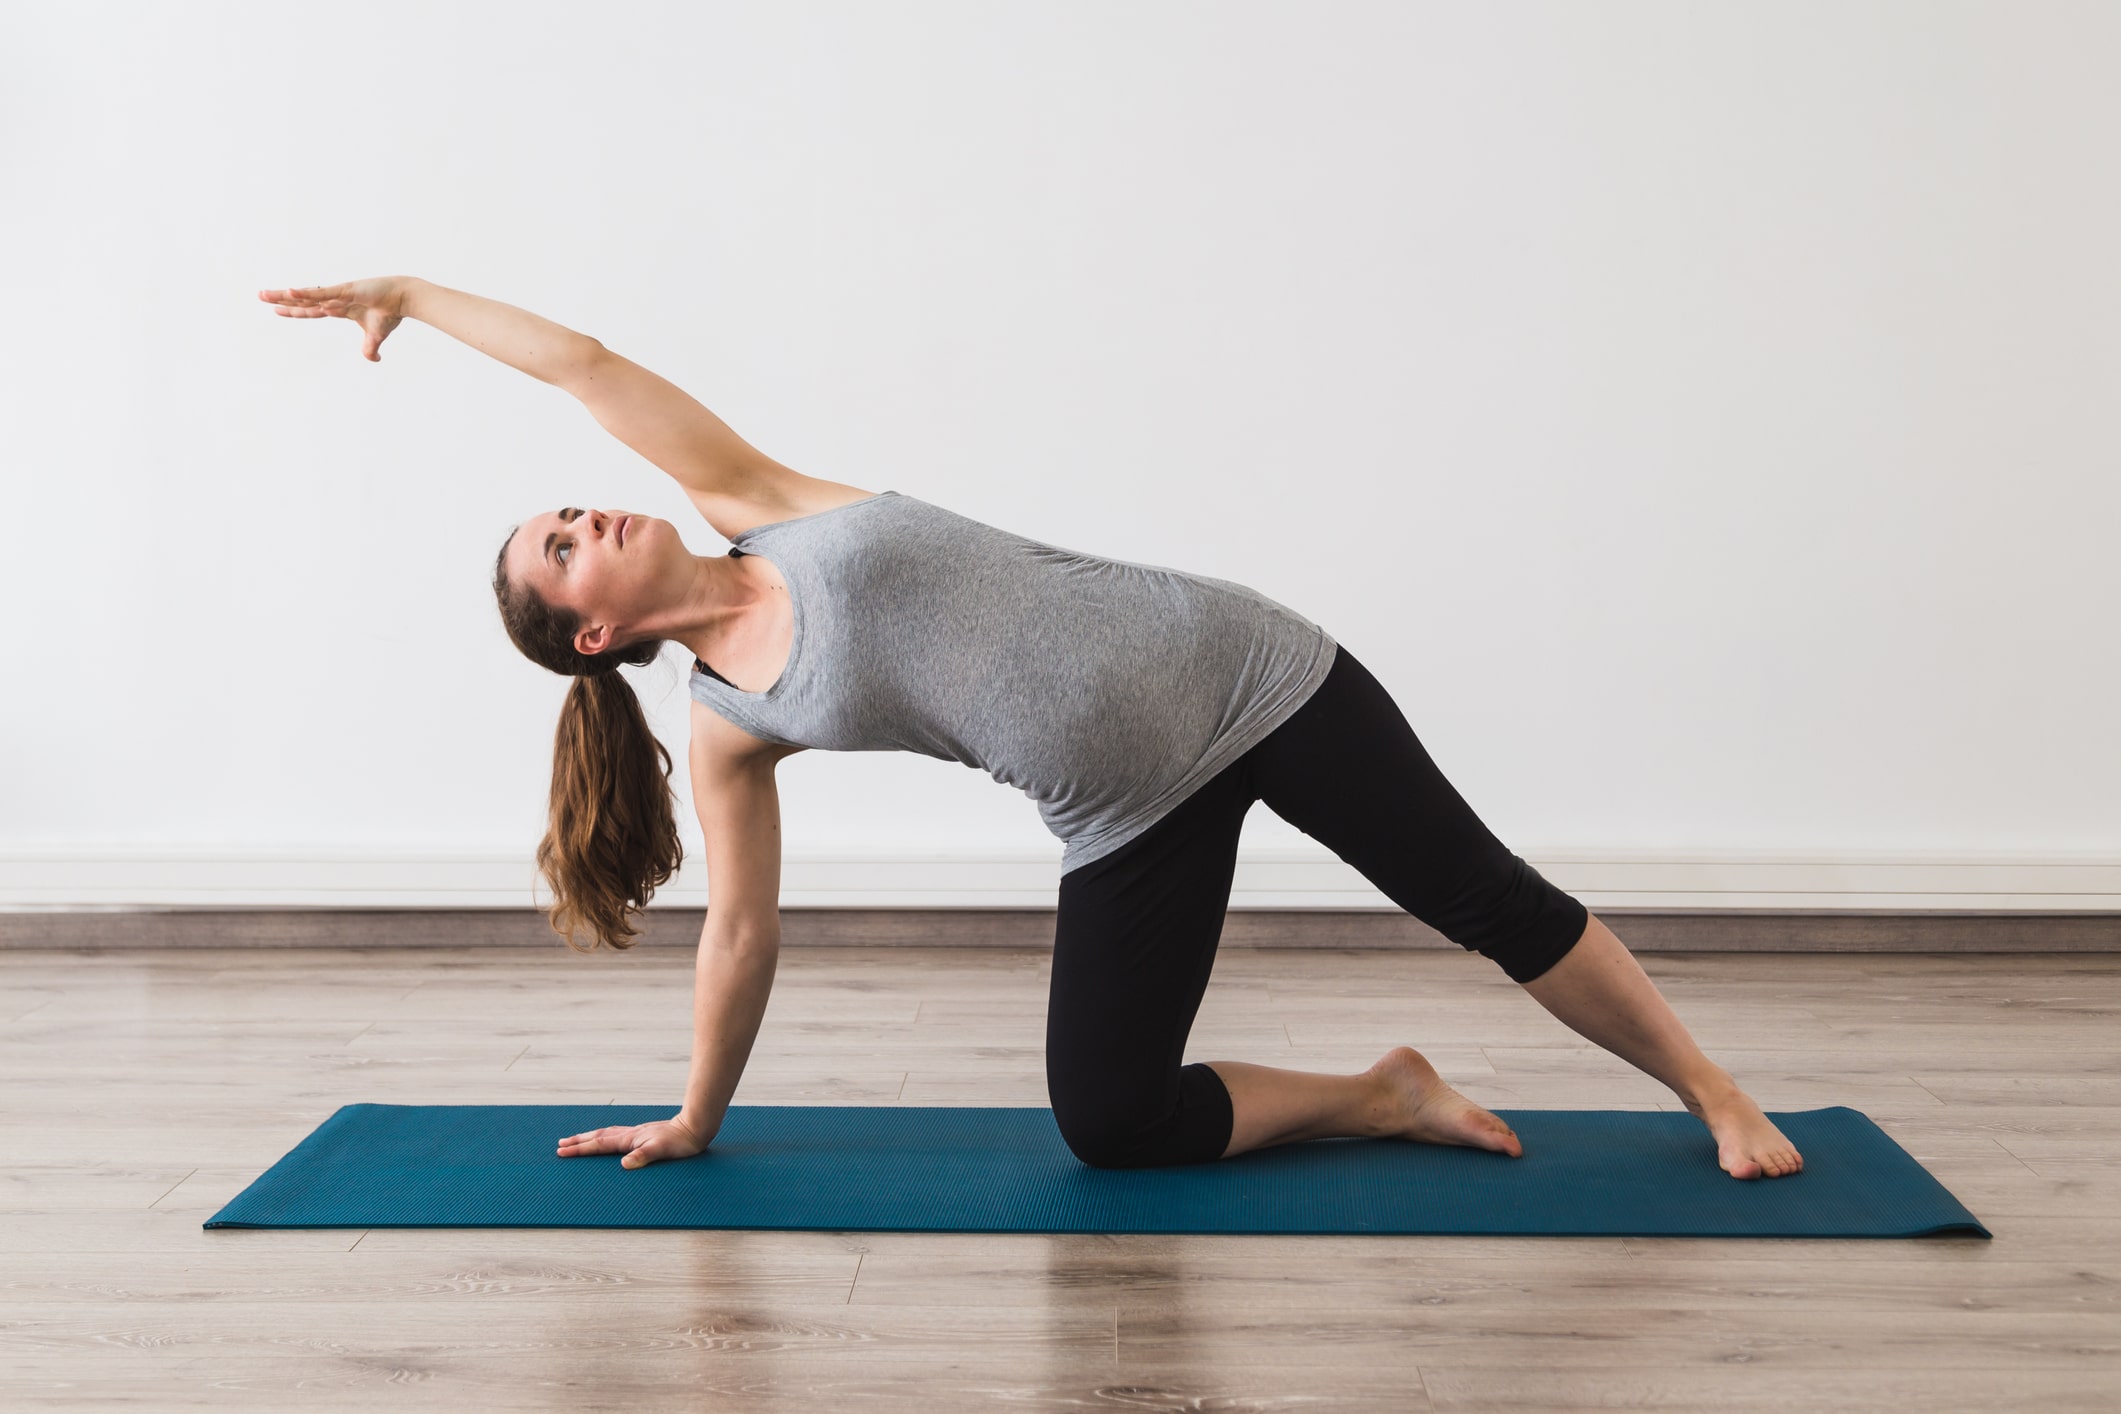 Yoga in Pregnancy - Poses & Tips